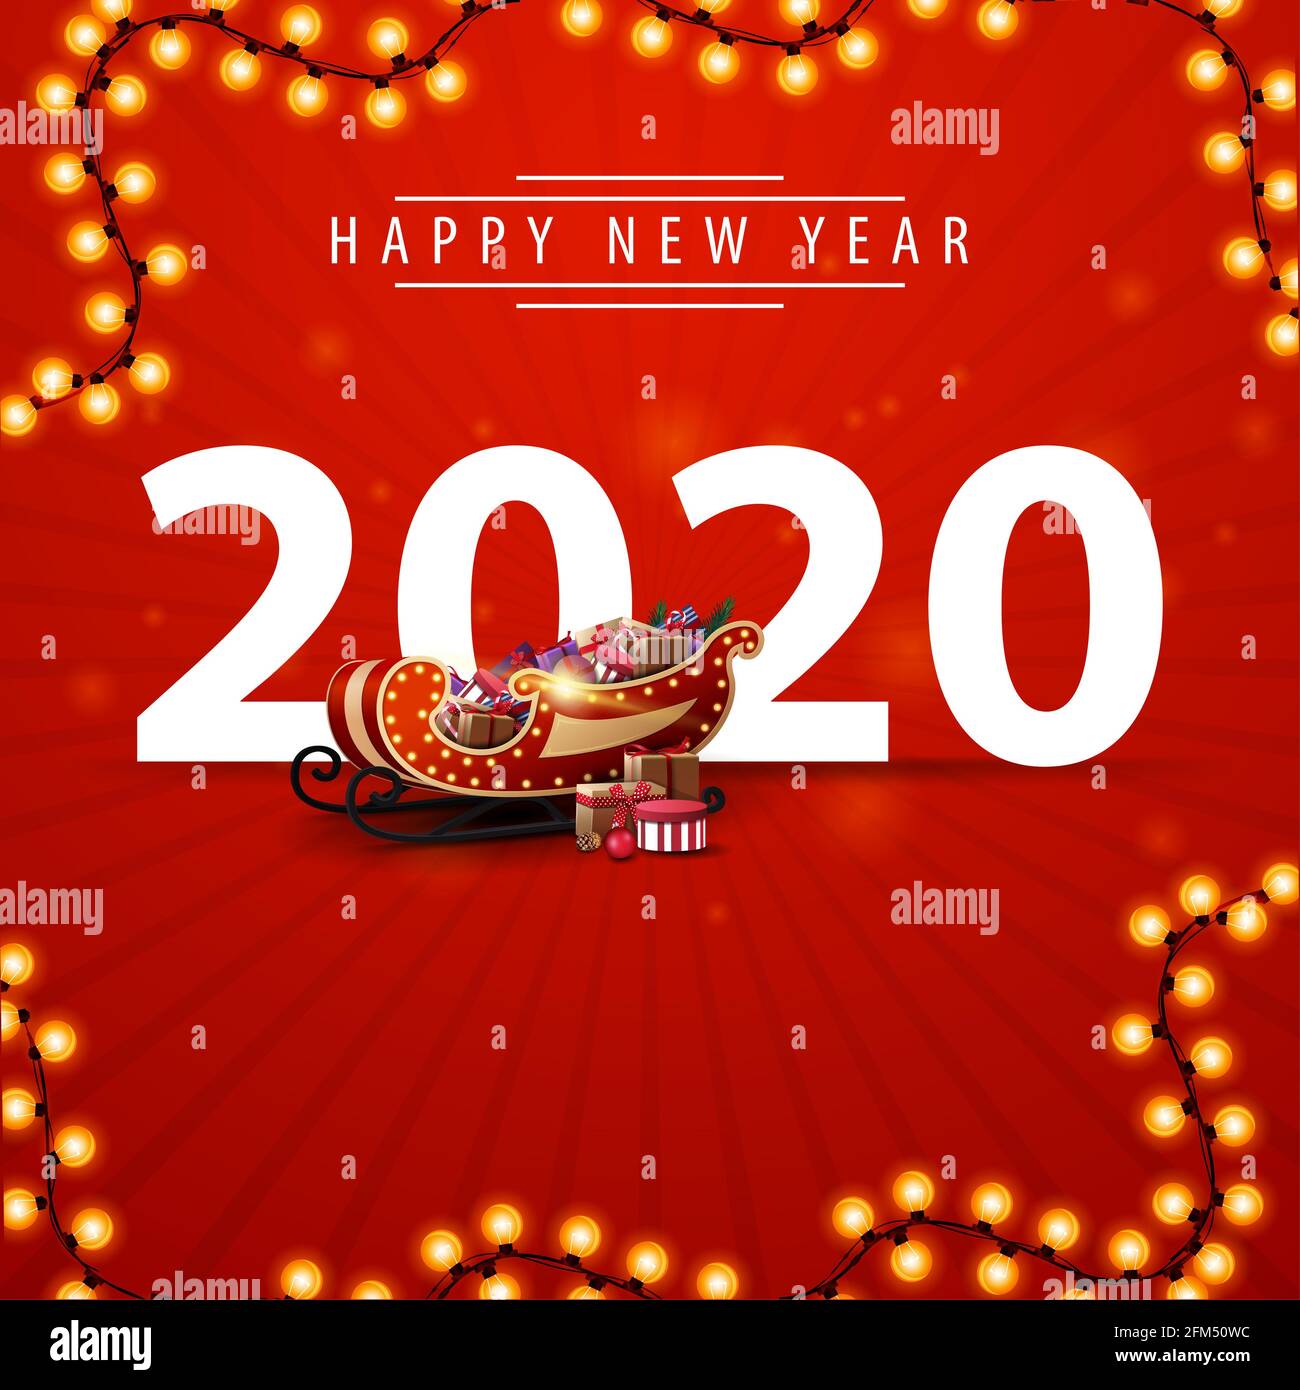 Bonne année, 2020, carte postale carrée rouge avec grands nombres, guirlande et Santa Sleigh avec cadeaux Banque D'Images